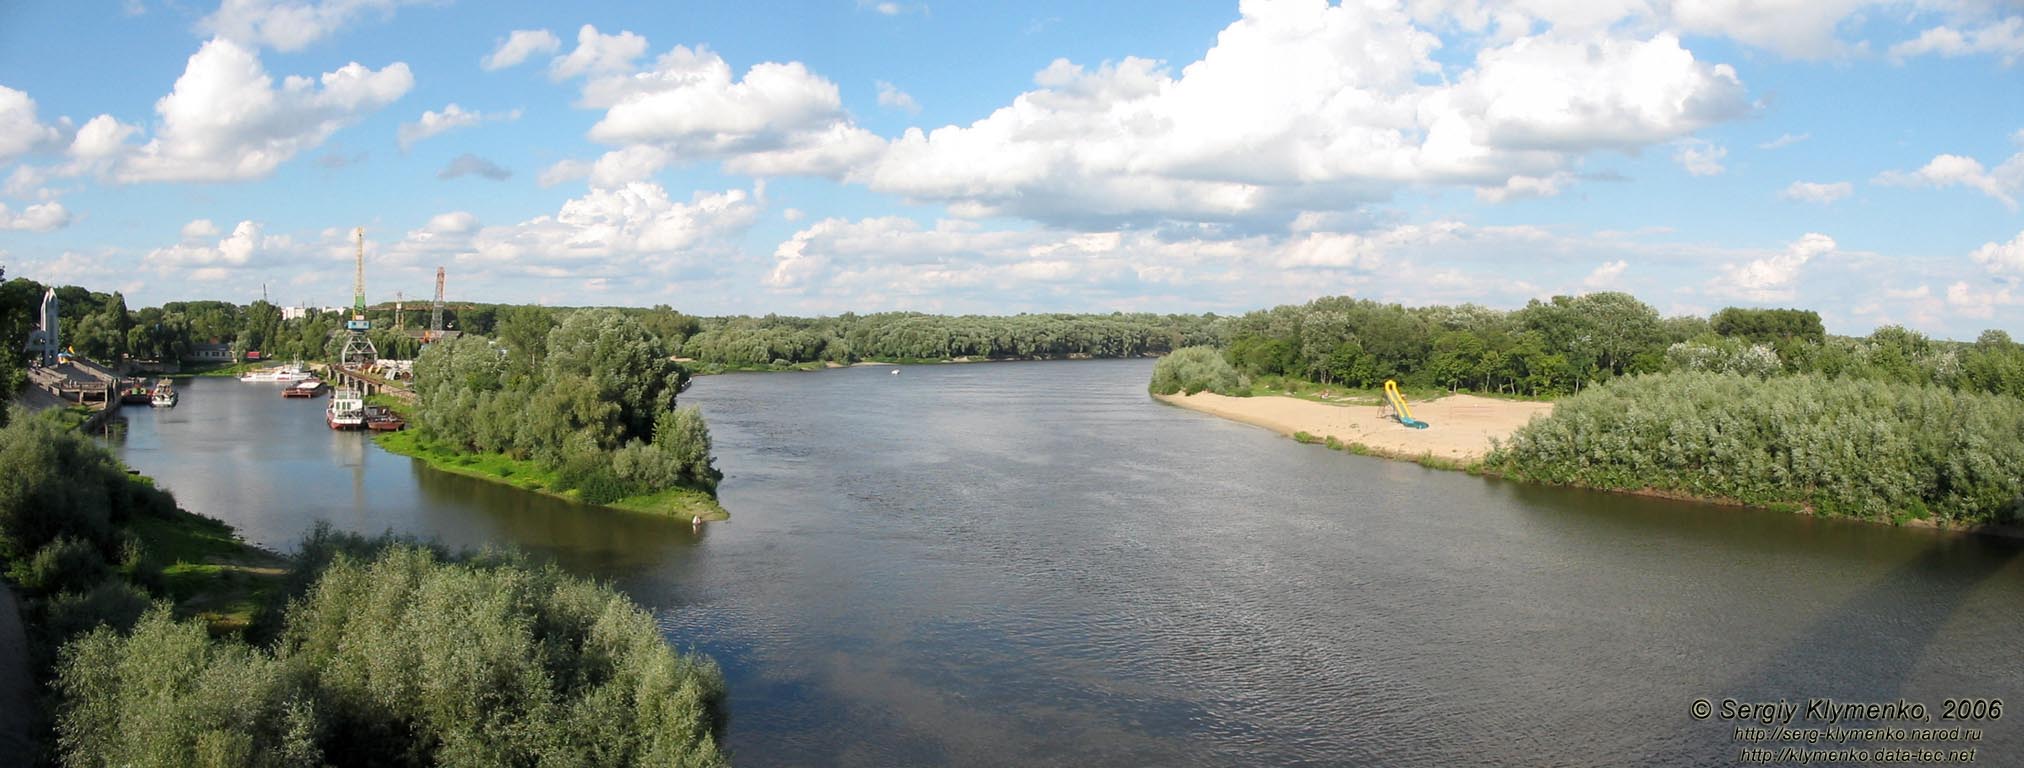 Чернигов. Фото. Вид на реку Десна ("против течения") с пешеходного моста.